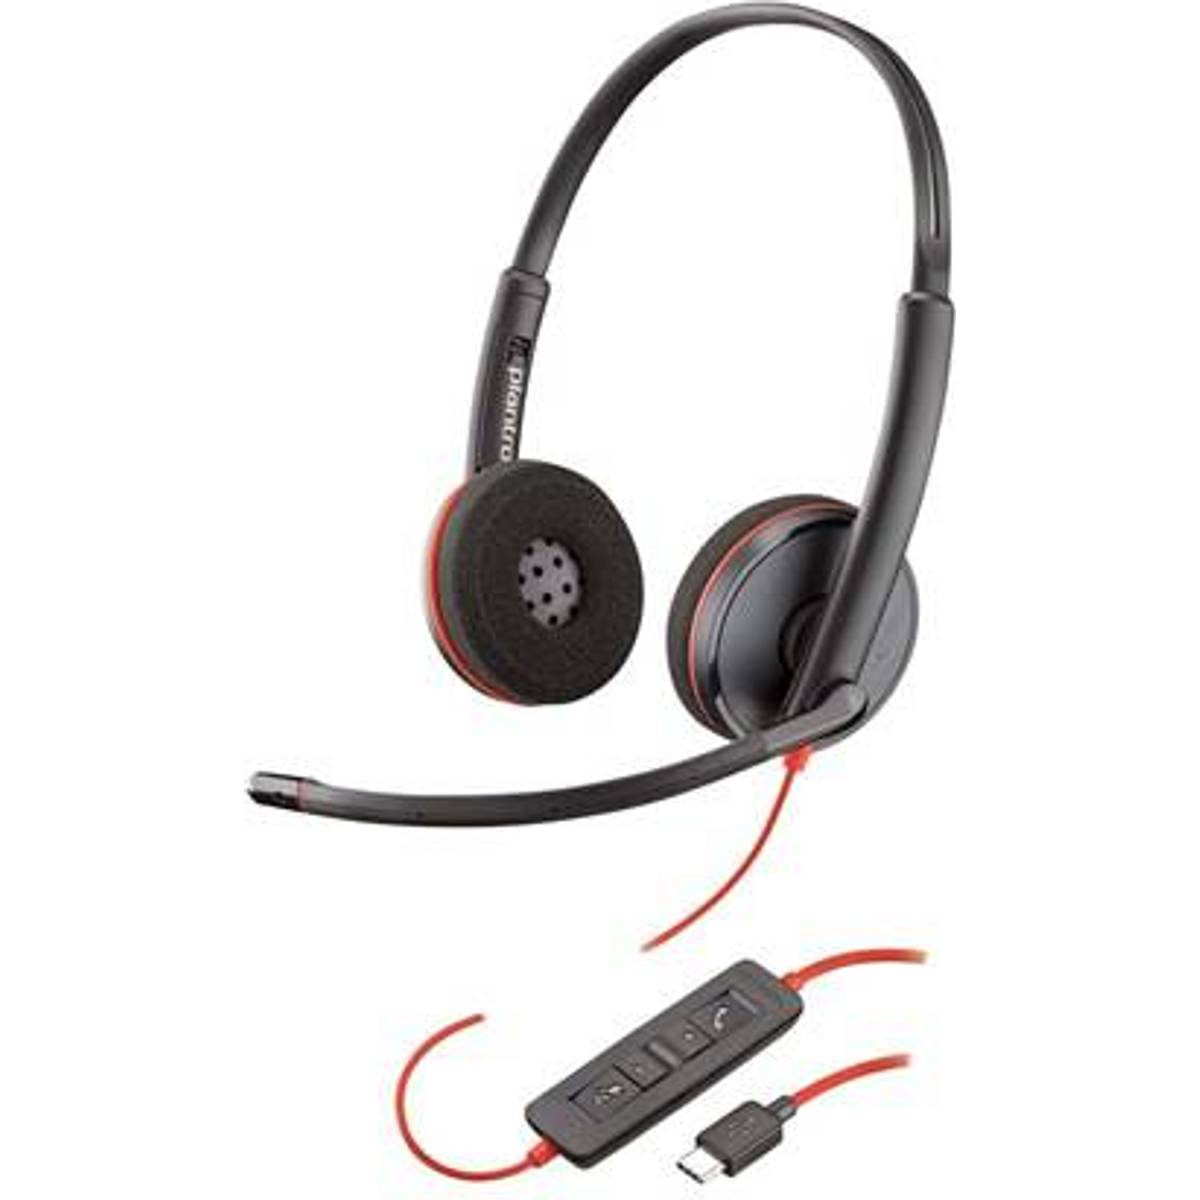 Usb c headset • Find den billigste pris hos PriceRunner nu »